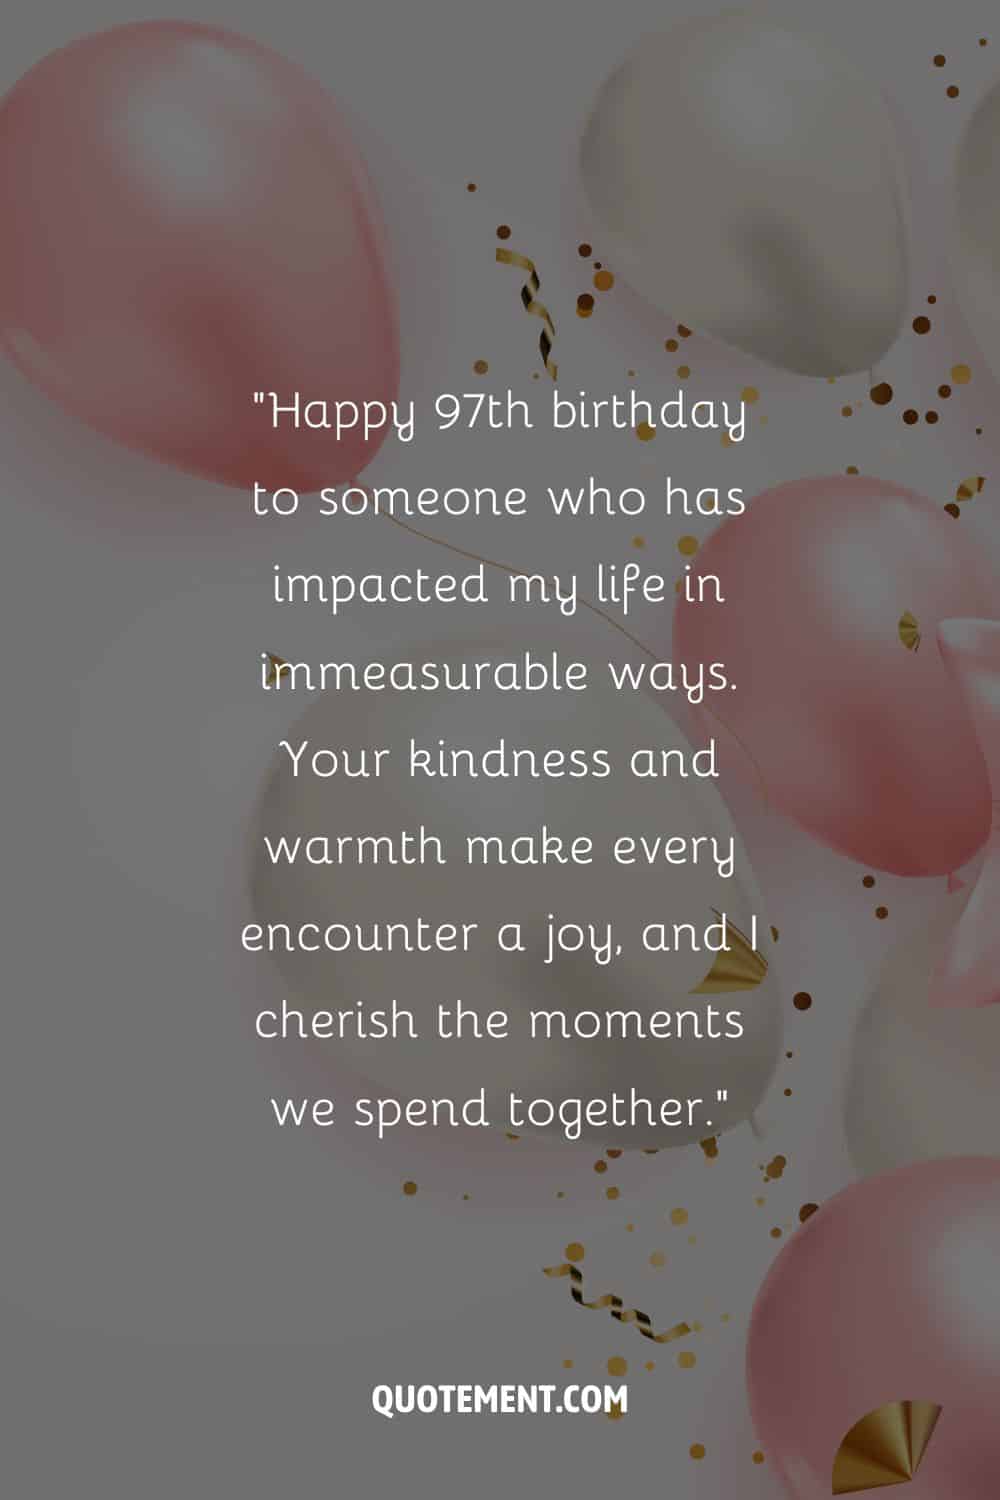 Mensaje para alguien especial que cumple 97 años y globos rosas y blancos junto con confeti dorado de fondo